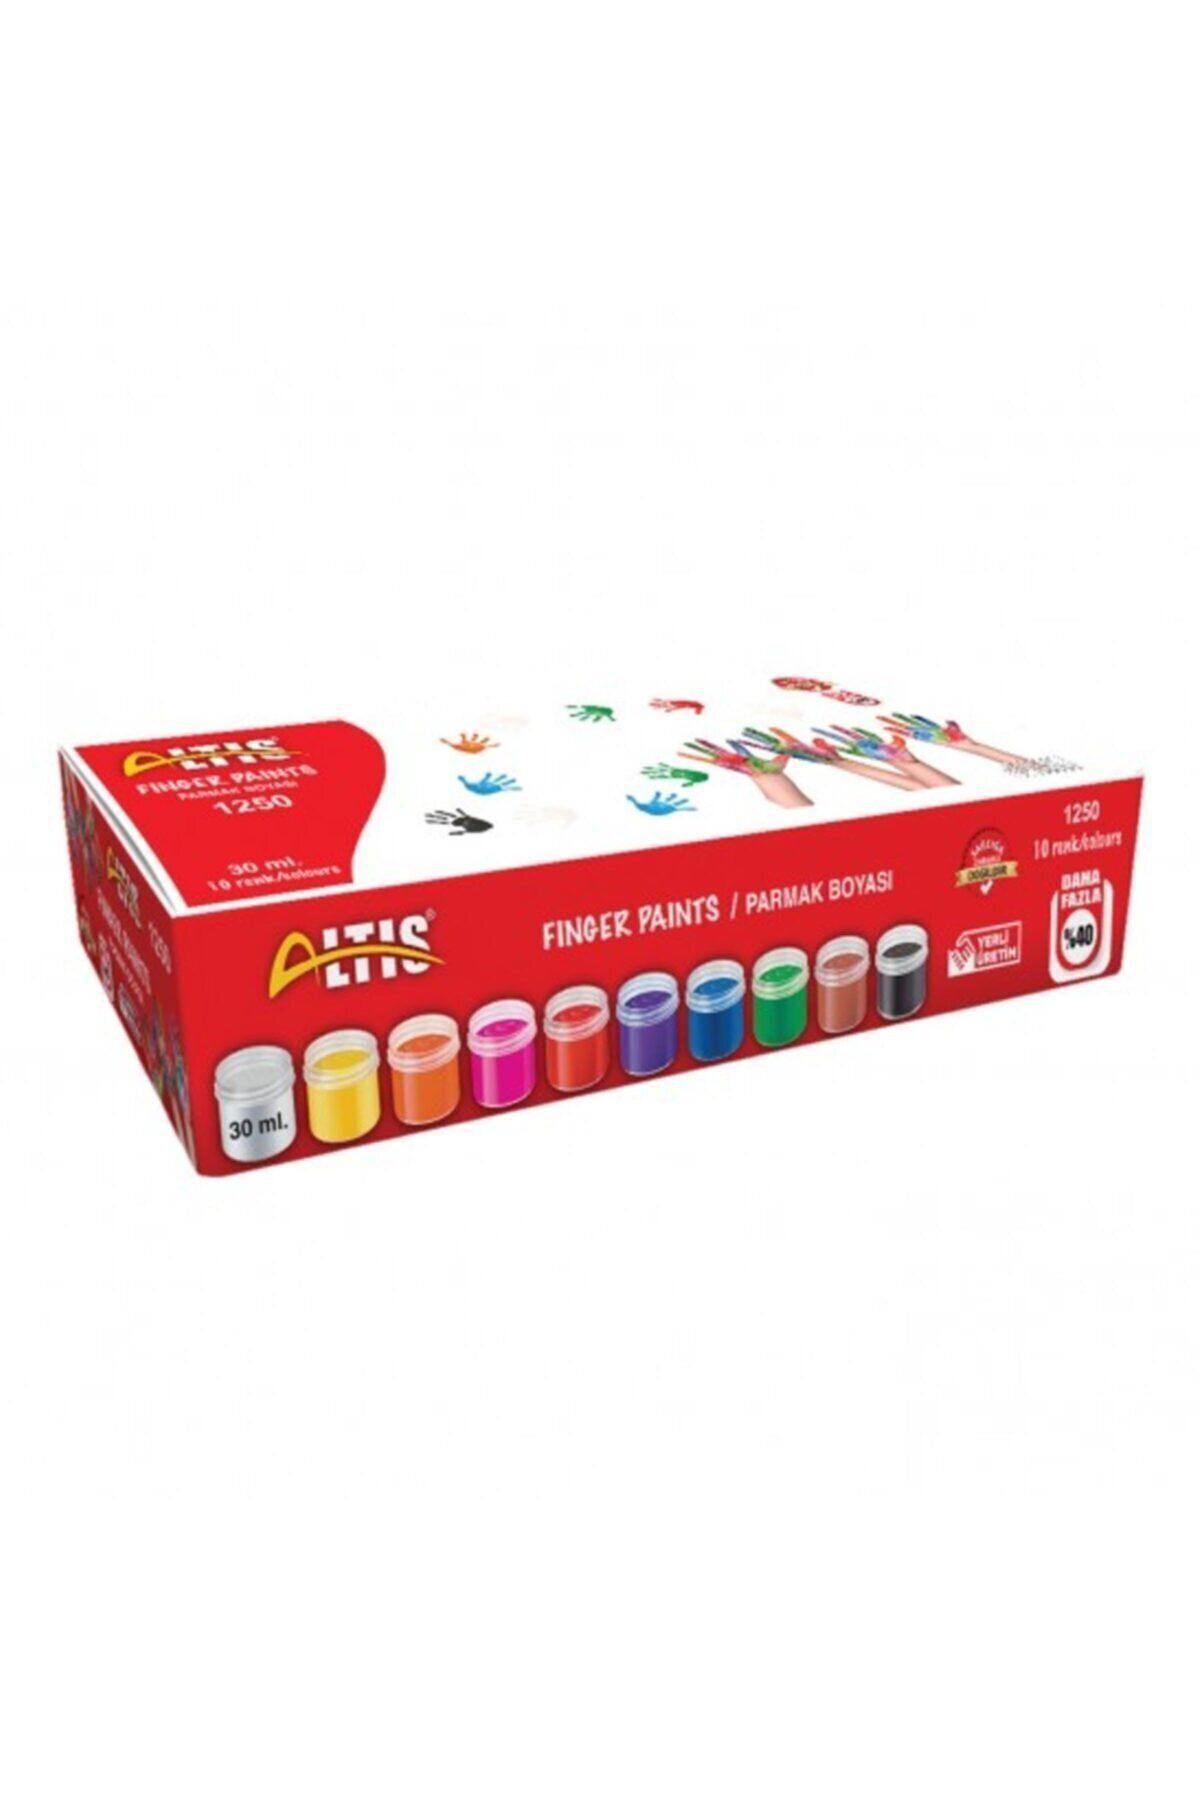 ALTIS Parmak Boyası 30 ml 10 Renk